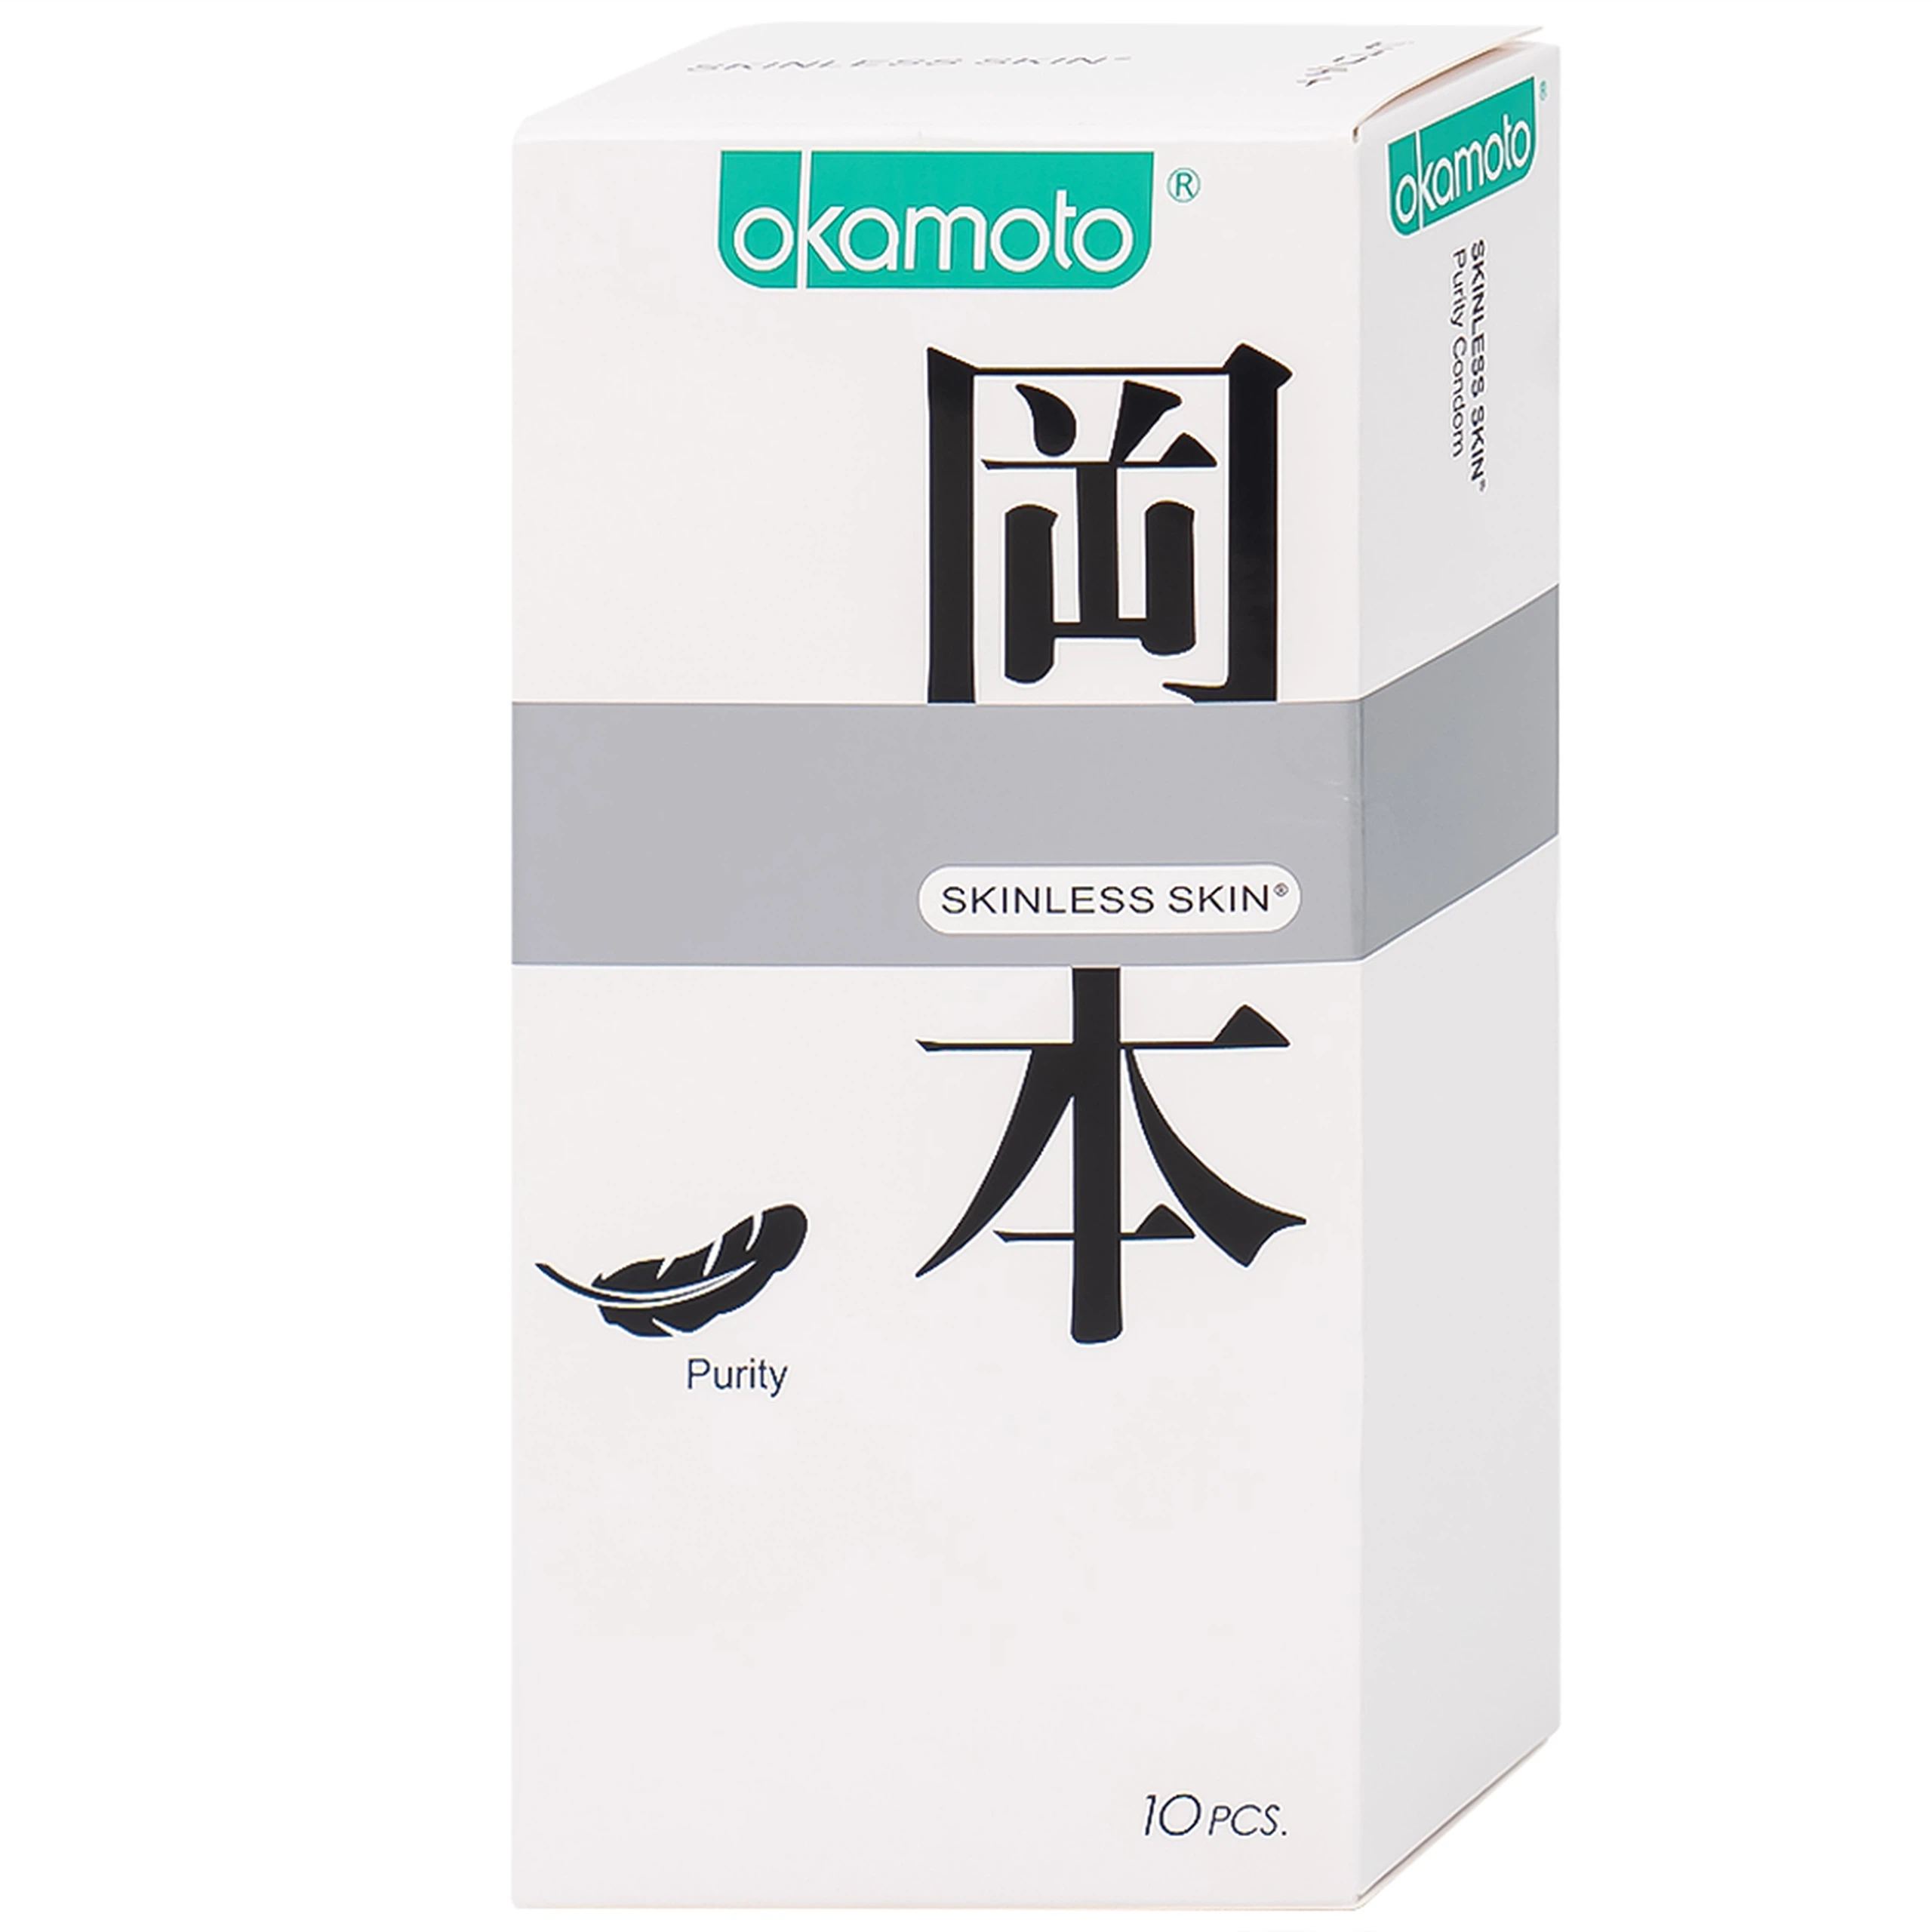 Bao cao su Okamoto Skinless Skin Purity không mùi, tinh khiết, dùng để phòng tránh thai và ngăn ngừa HIV (10 cái)